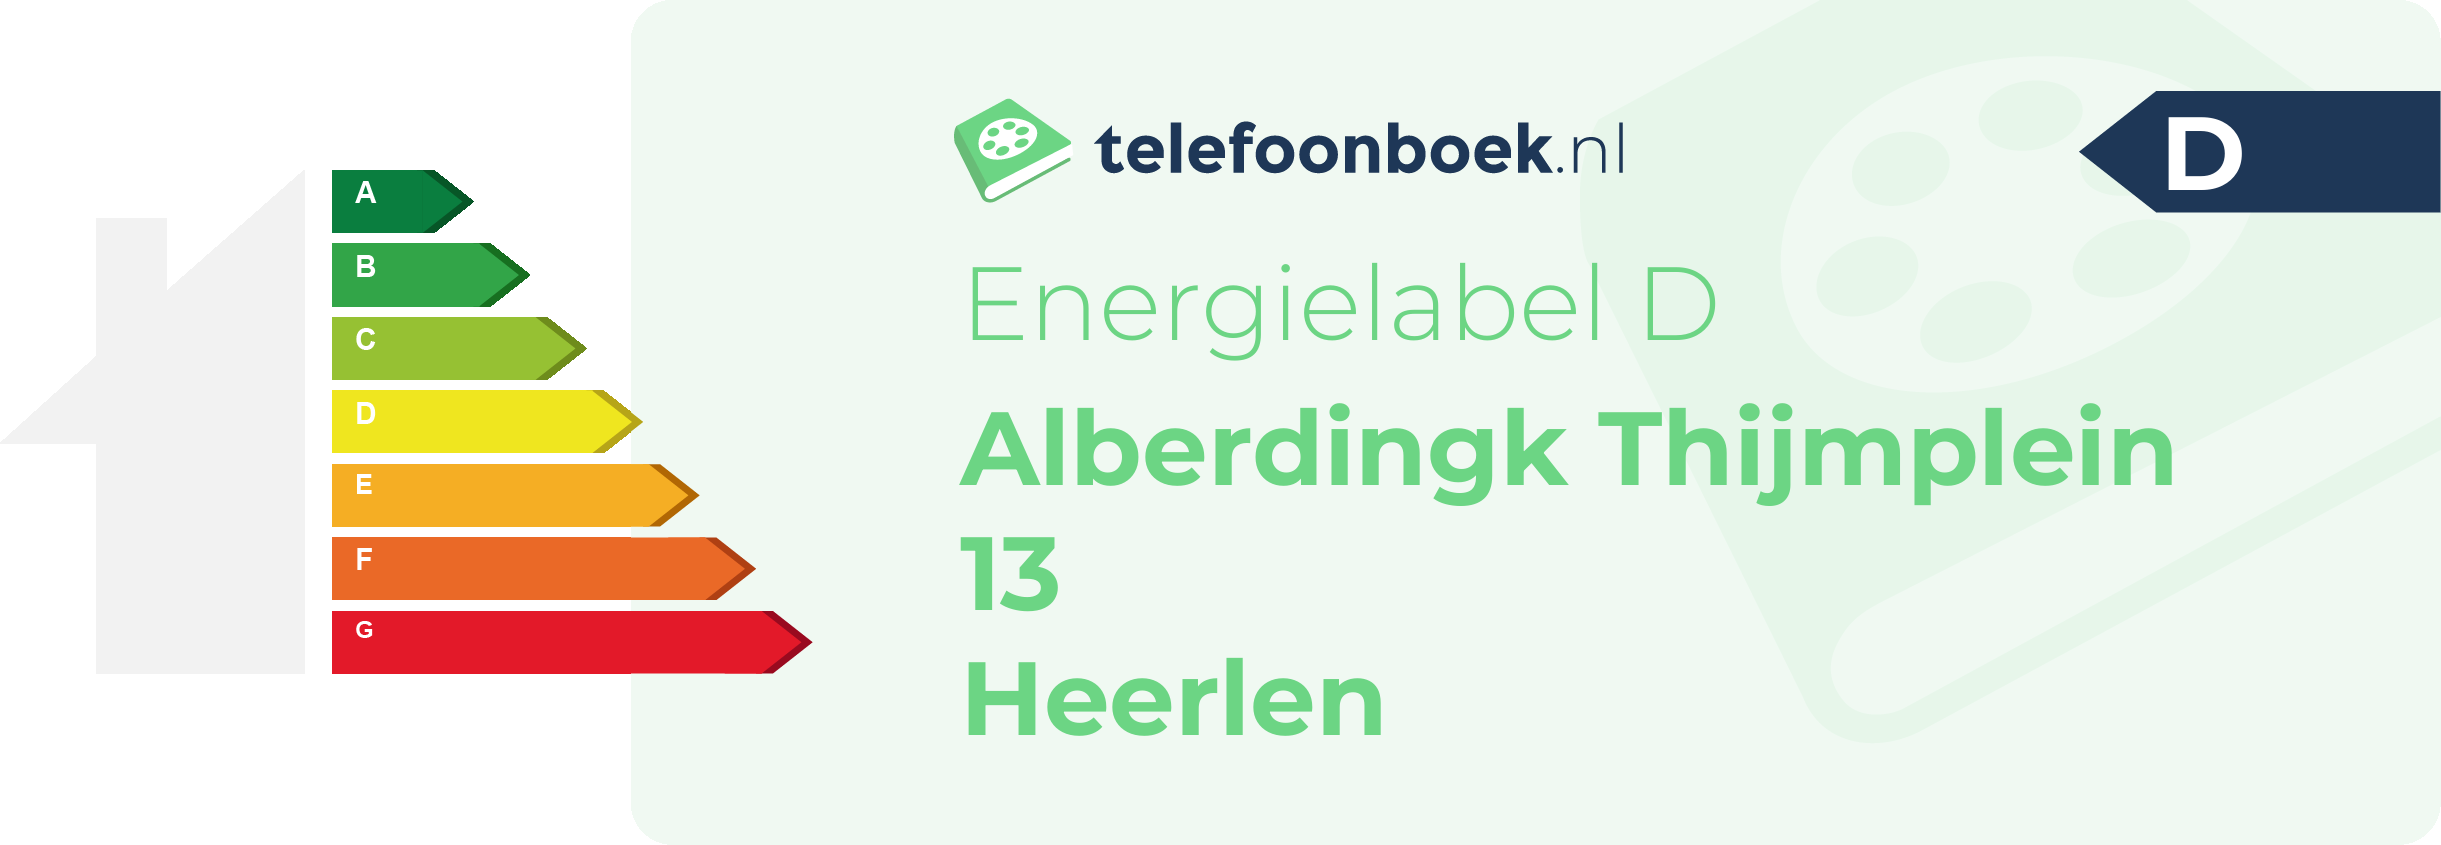 Energielabel Alberdingk Thijmplein 13 Heerlen